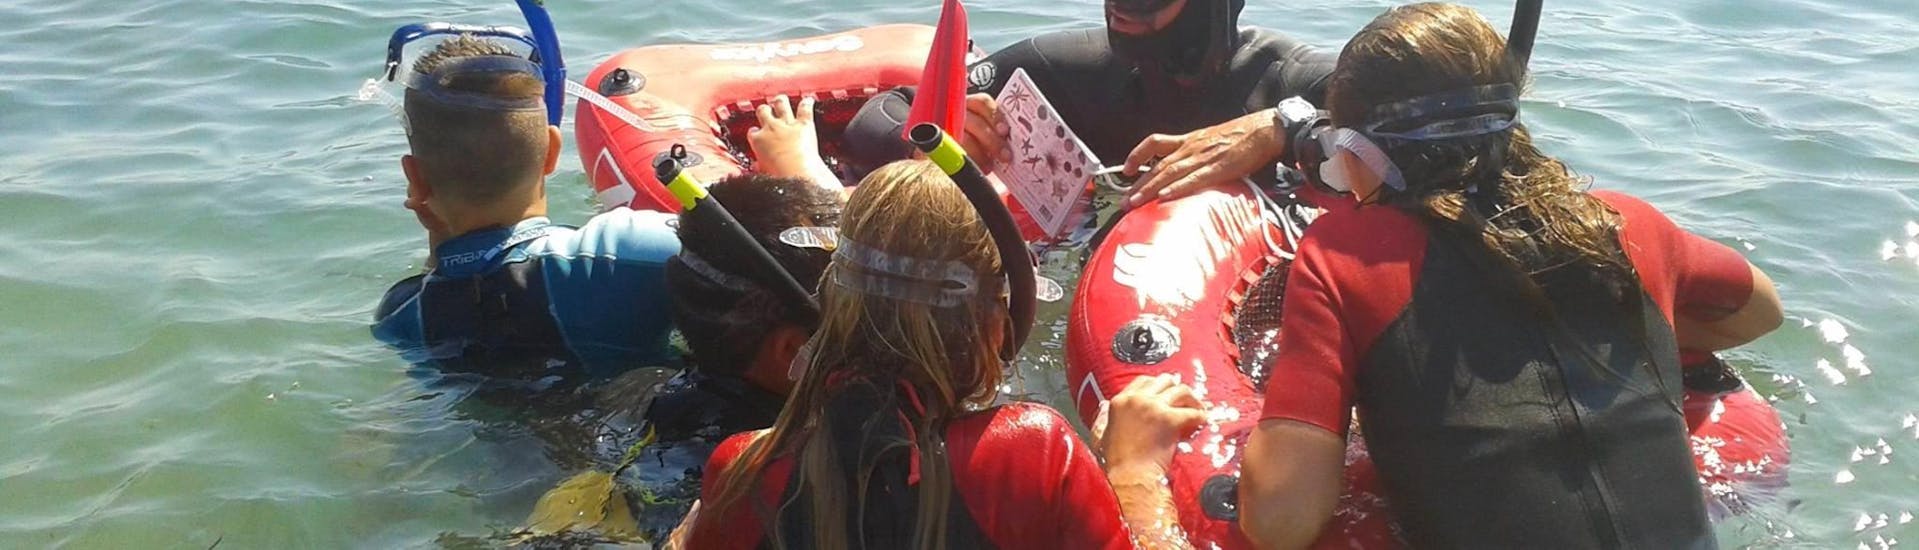 L'instructeur explique aux enfants ce qu'ils vont voir en faisant du snorkeling au Cap d'Antibes près de Nice avec BeFree2Dive.